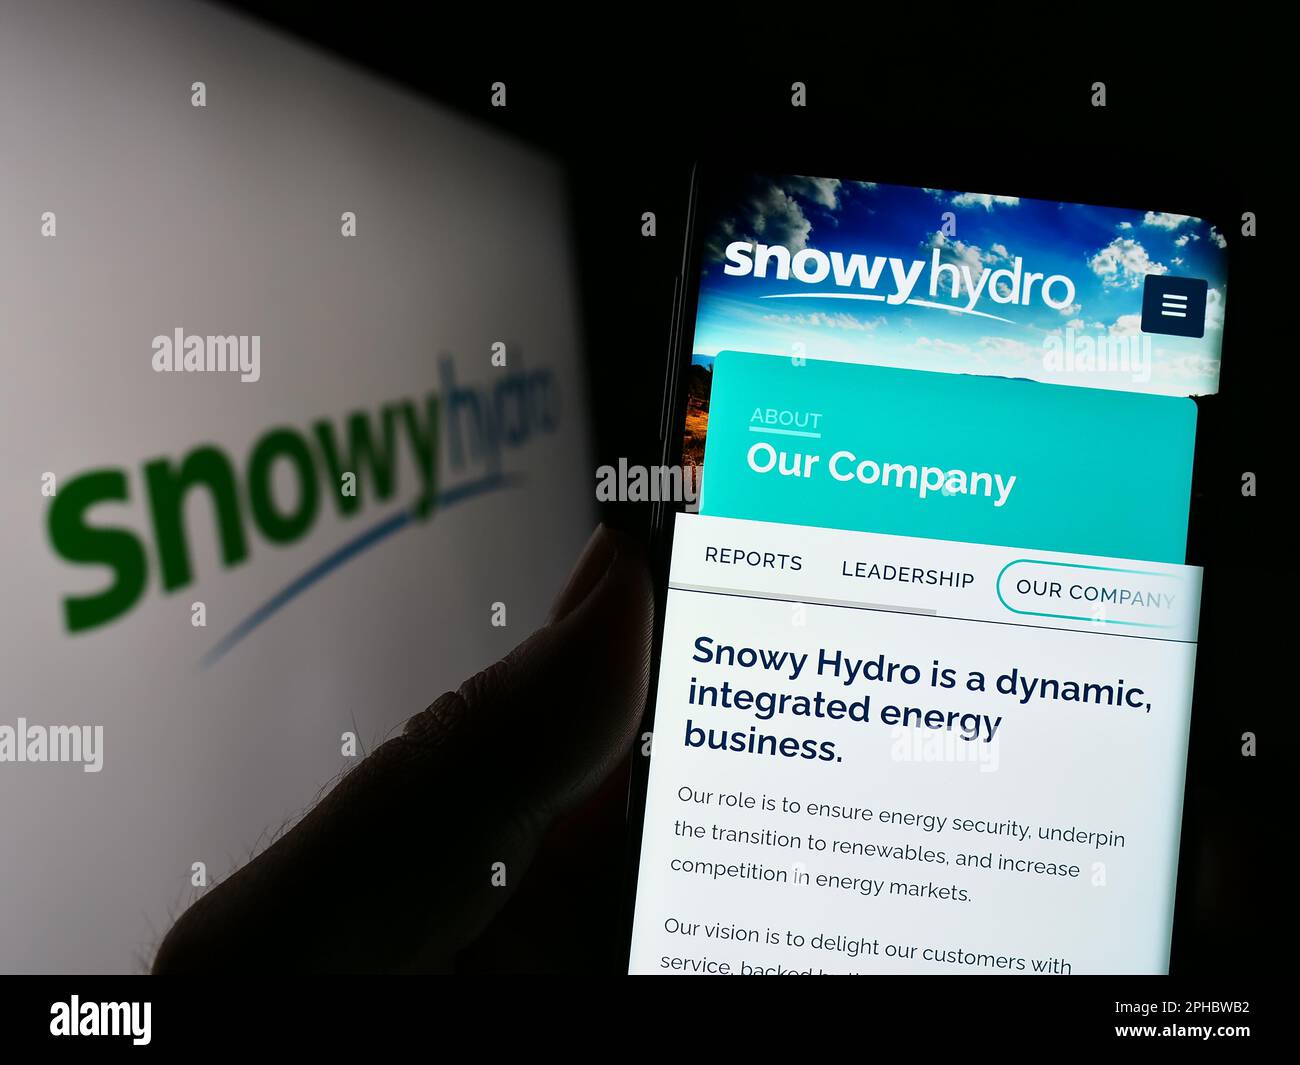 Persona che tiene il cellulare con la pagina web della società australiana di energia Snowy Hydro Limited sullo schermo con il logo. Messa a fuoco al centro del display del telefono. Foto Stock